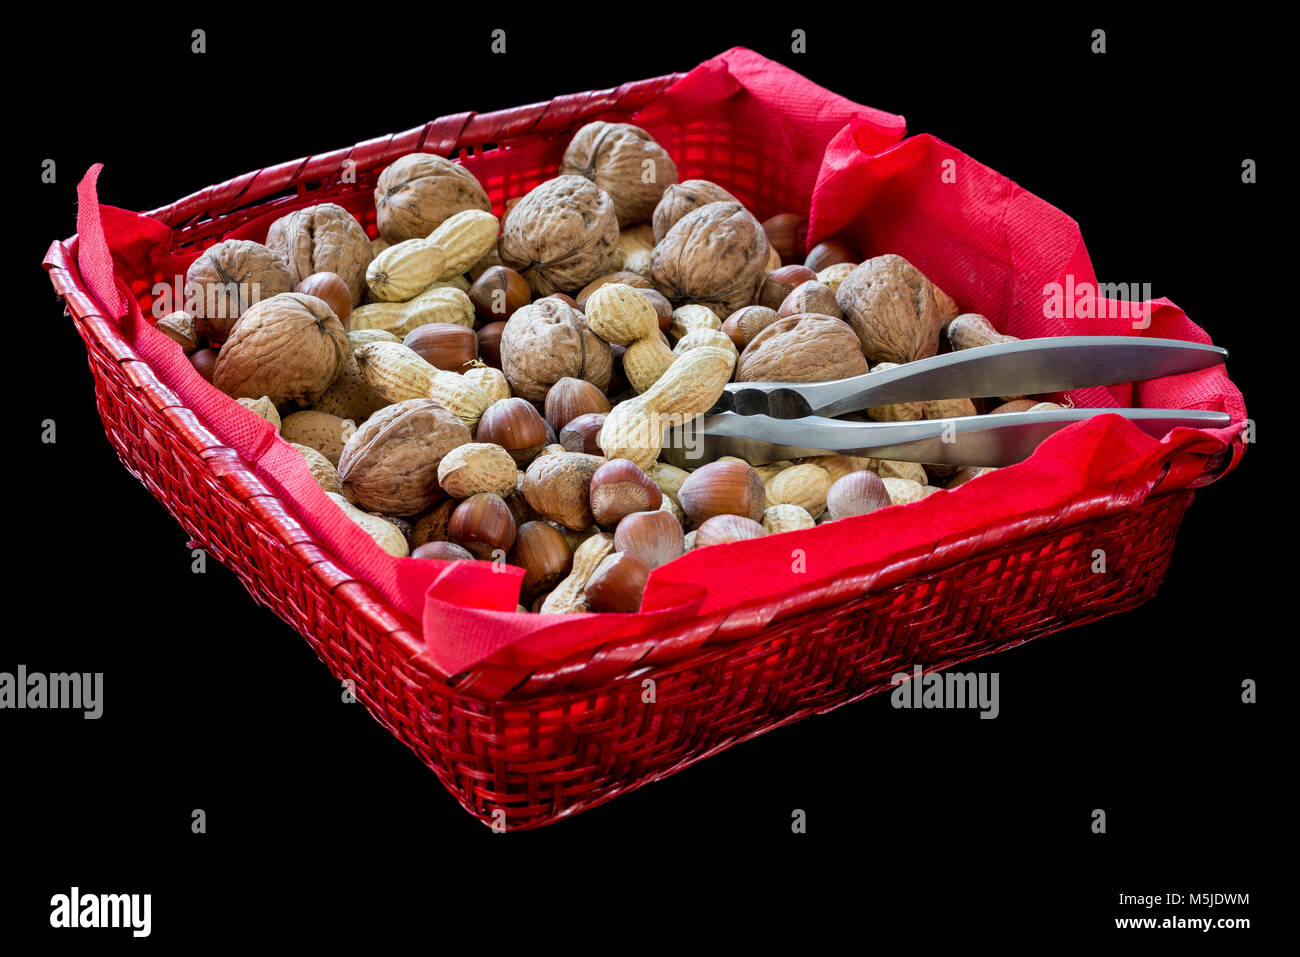 Red Weidenkorb mit getrockneten Früchten, Haselnuss, Walnuss, Mandeln, Erdnüsse und ein Nussknacker auf schwarzem Hintergrund Stockfoto